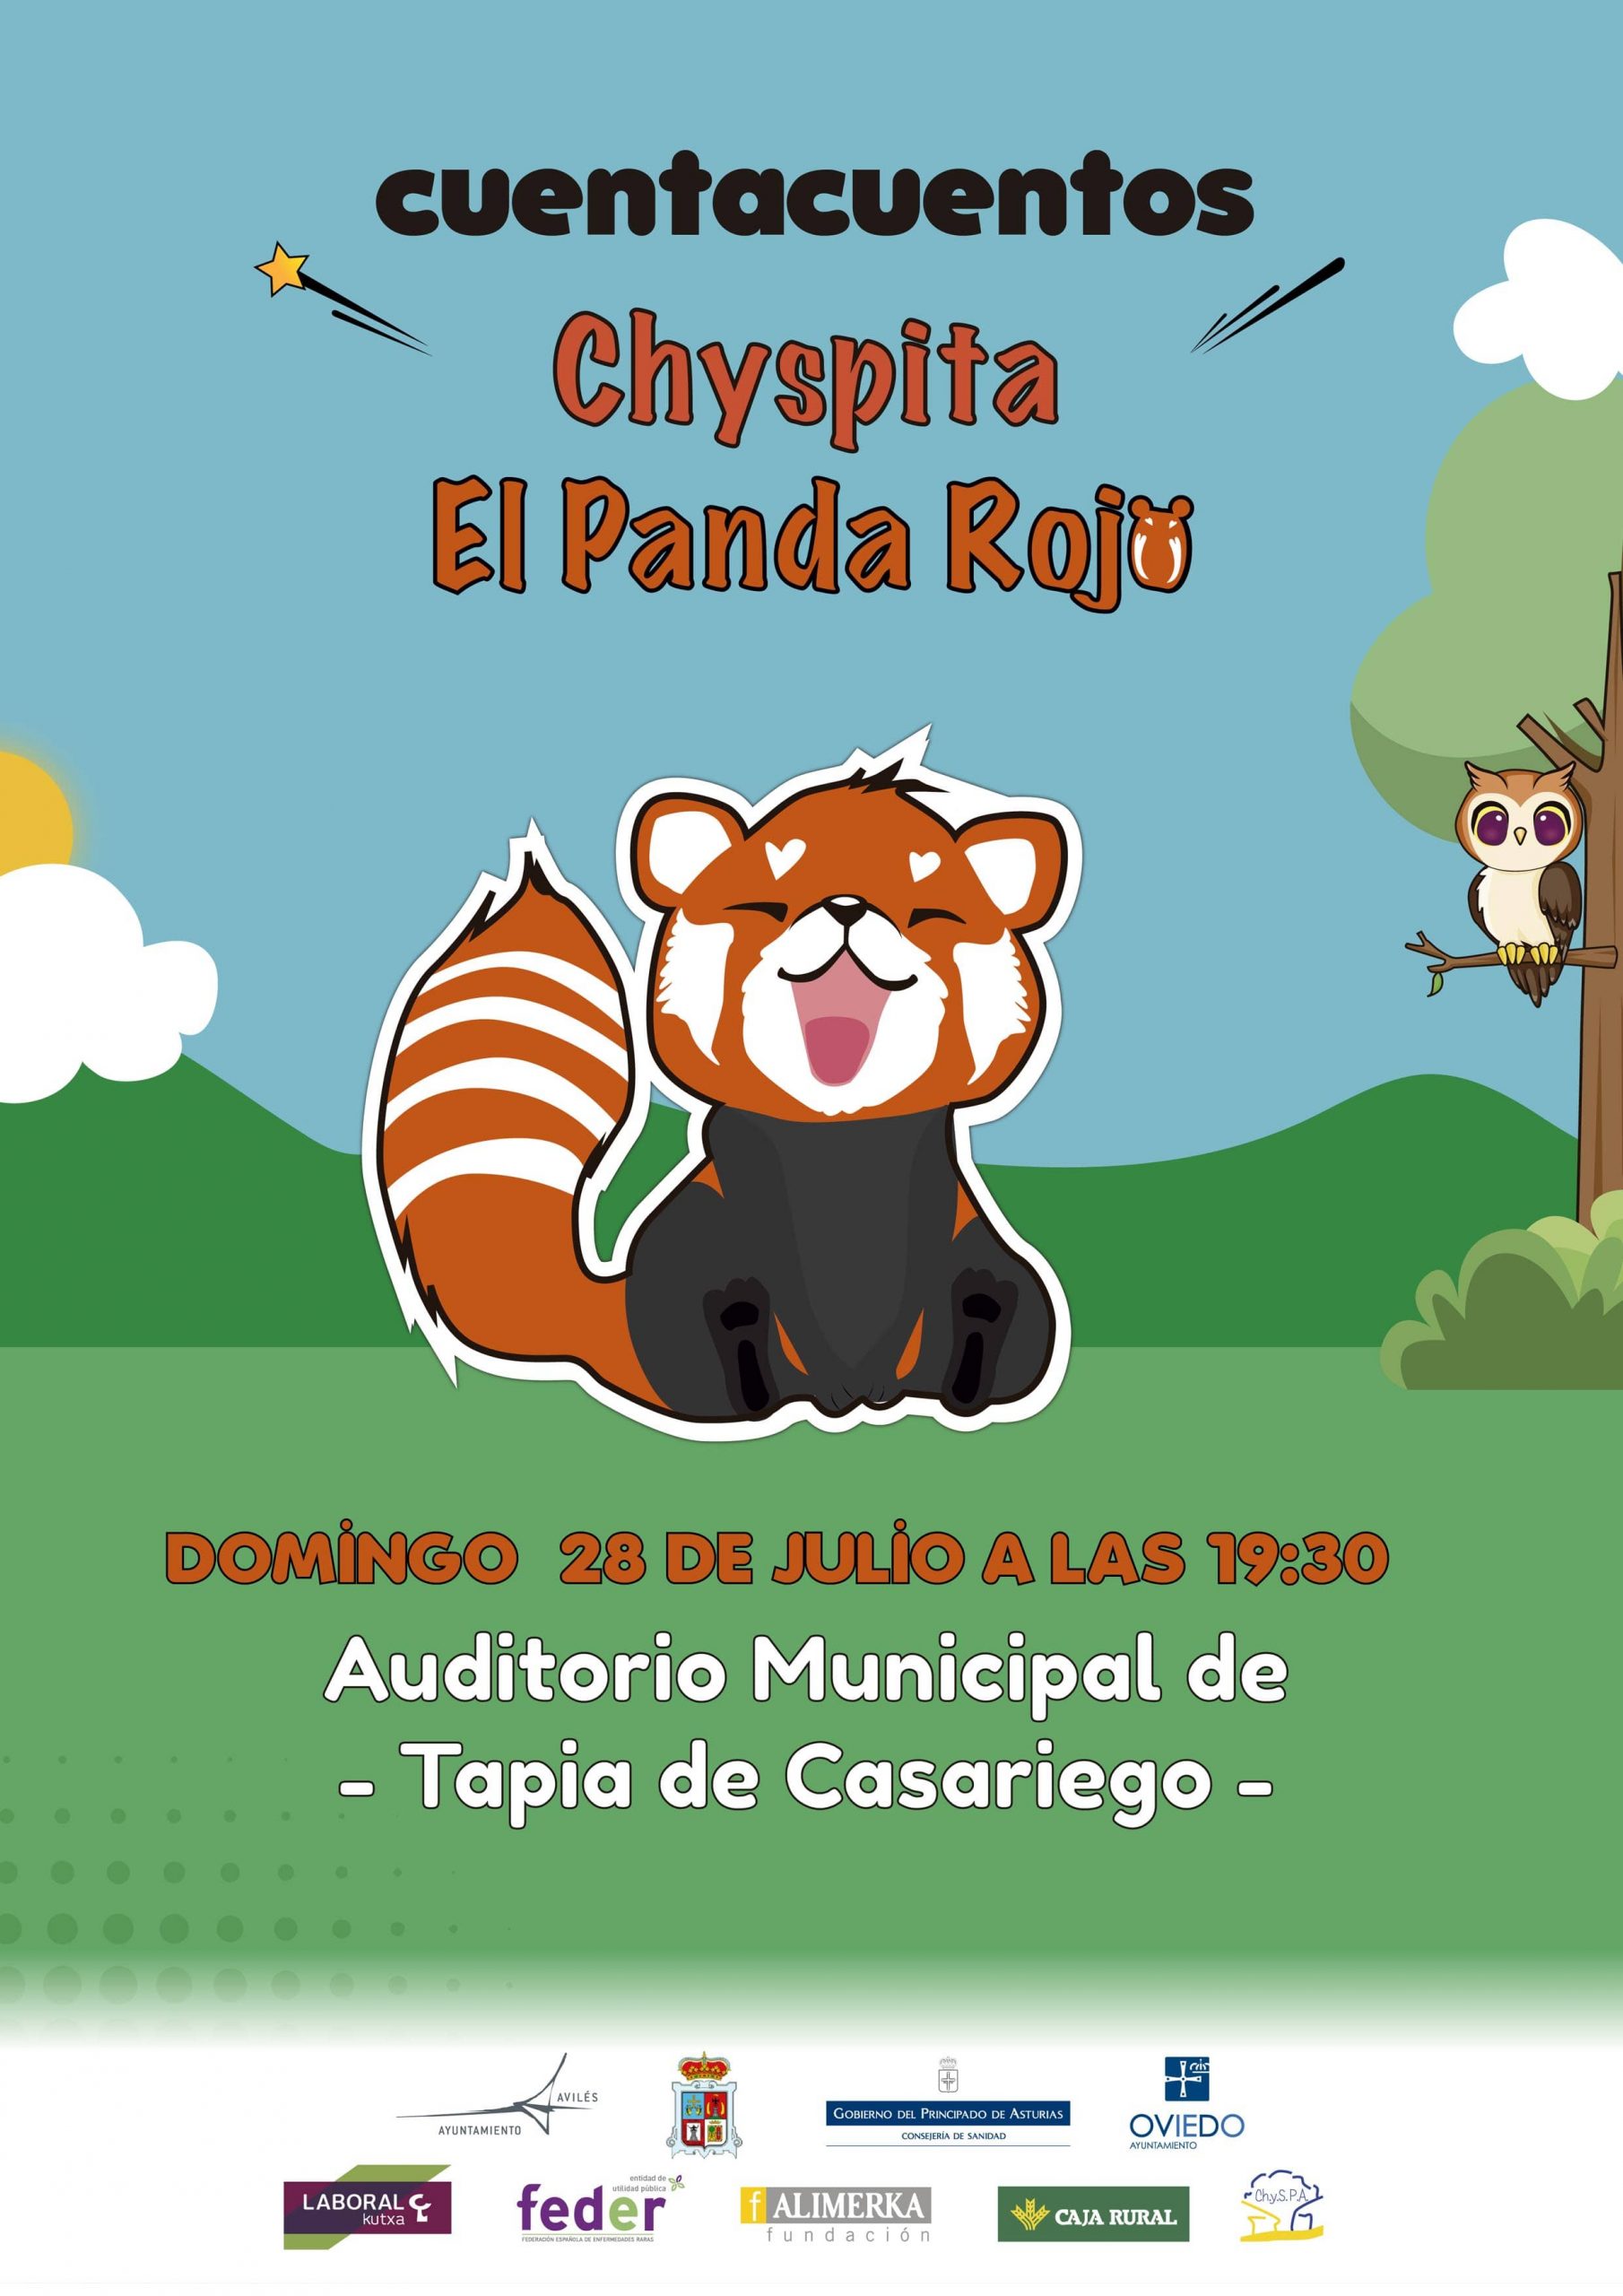 Cuentacuento Chyspita el panda rojo en Tapia de Casariego, en el Auditorio Municipal el 28 de julio a las 19:30h